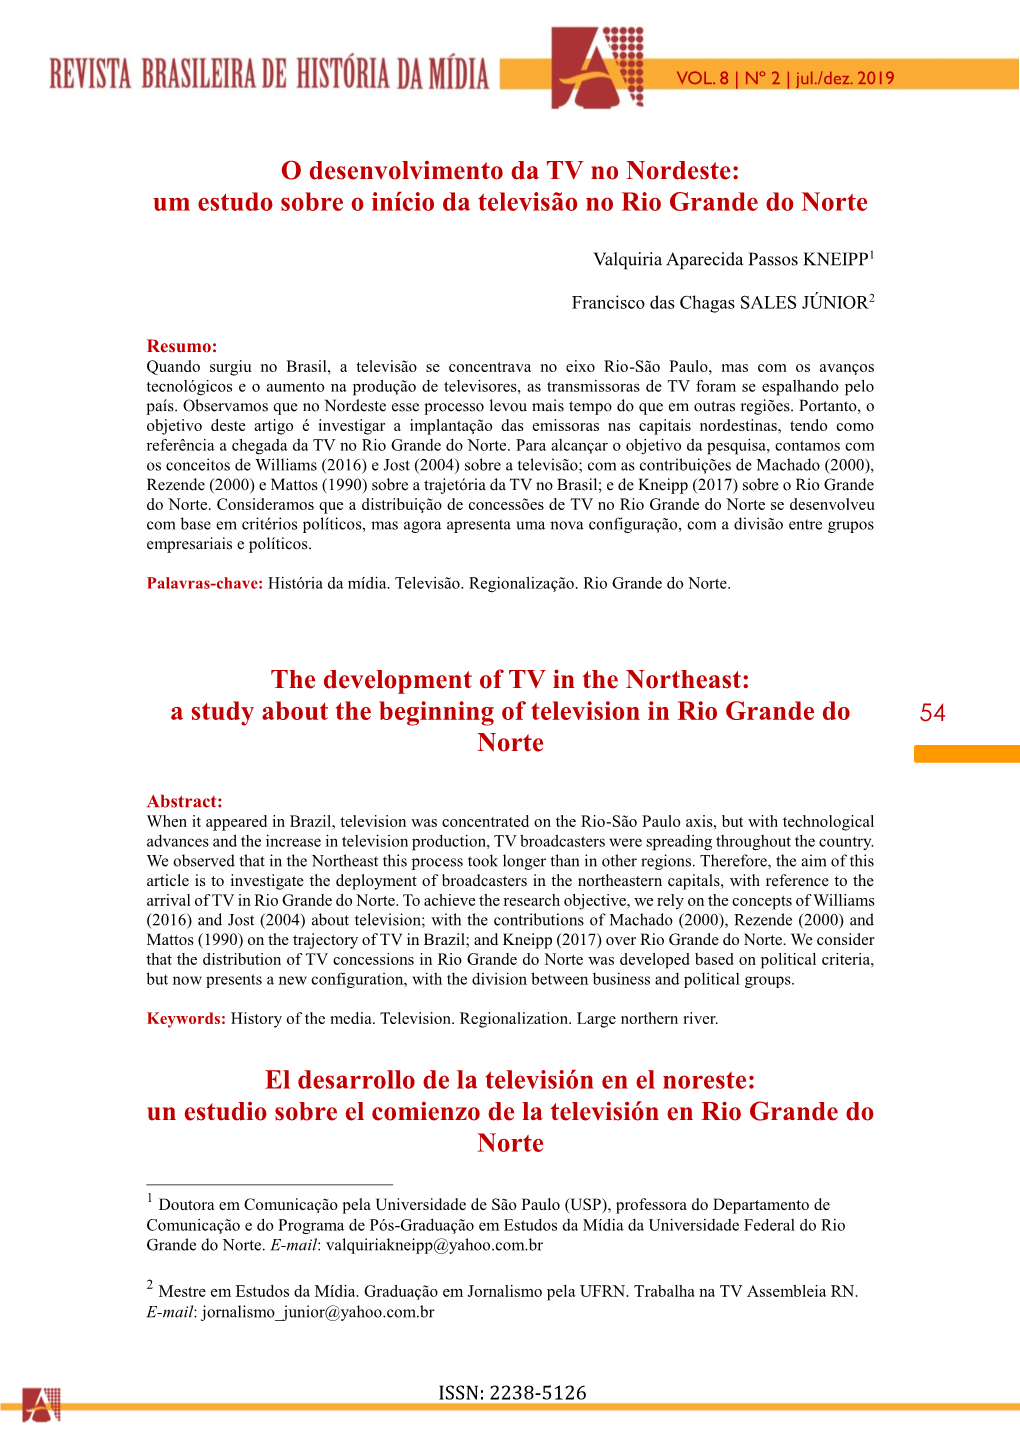 O Desenvolvimento Da TV No Nordeste: Um Estudo Sobre O Início Da Televisão No Rio Grande Do Norte